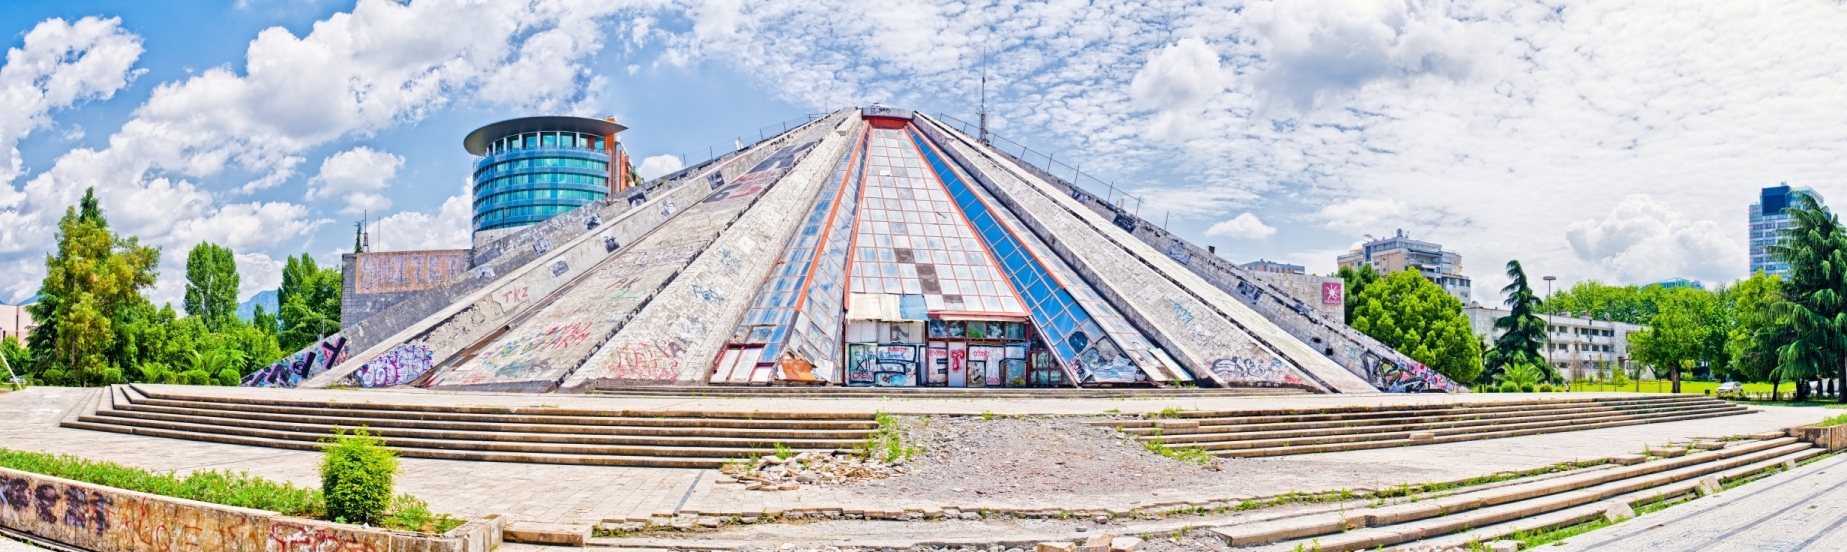 Albanie - Pano - TIA - Site - Pyramide de Tirana, Architecture - S233195734 - xEST